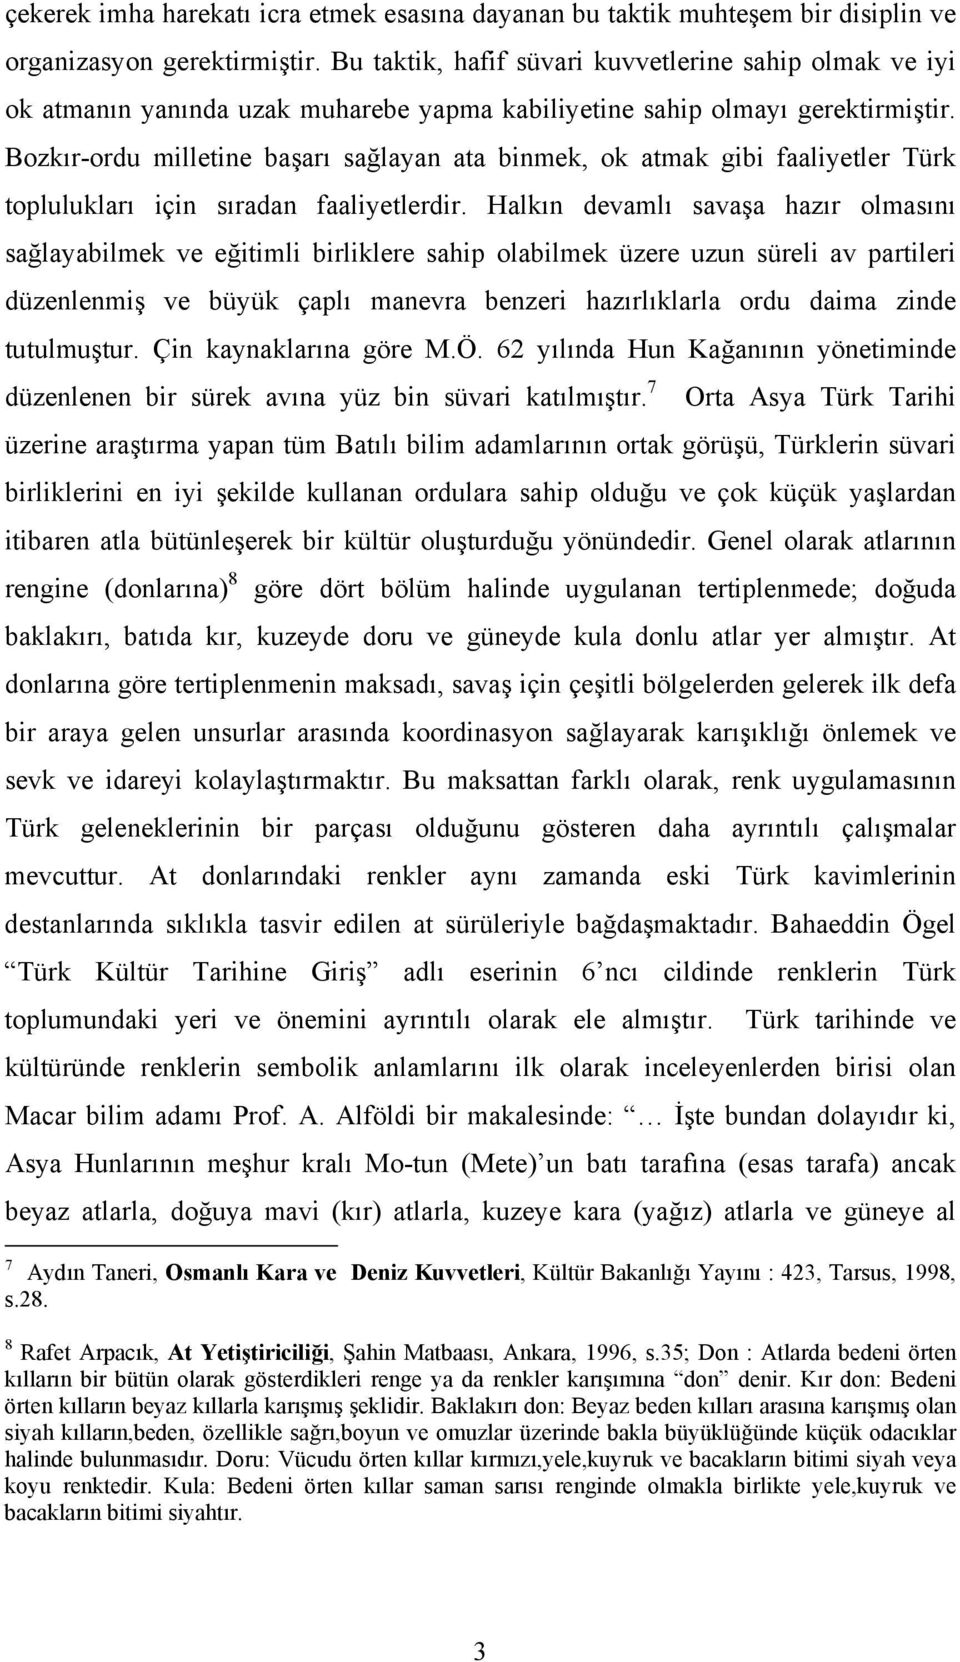 Bozkır-ordu milletine başarı sağlayan ata binmek, ok atmak gibi faaliyetler Türk toplulukları için sıradan faaliyetlerdir.